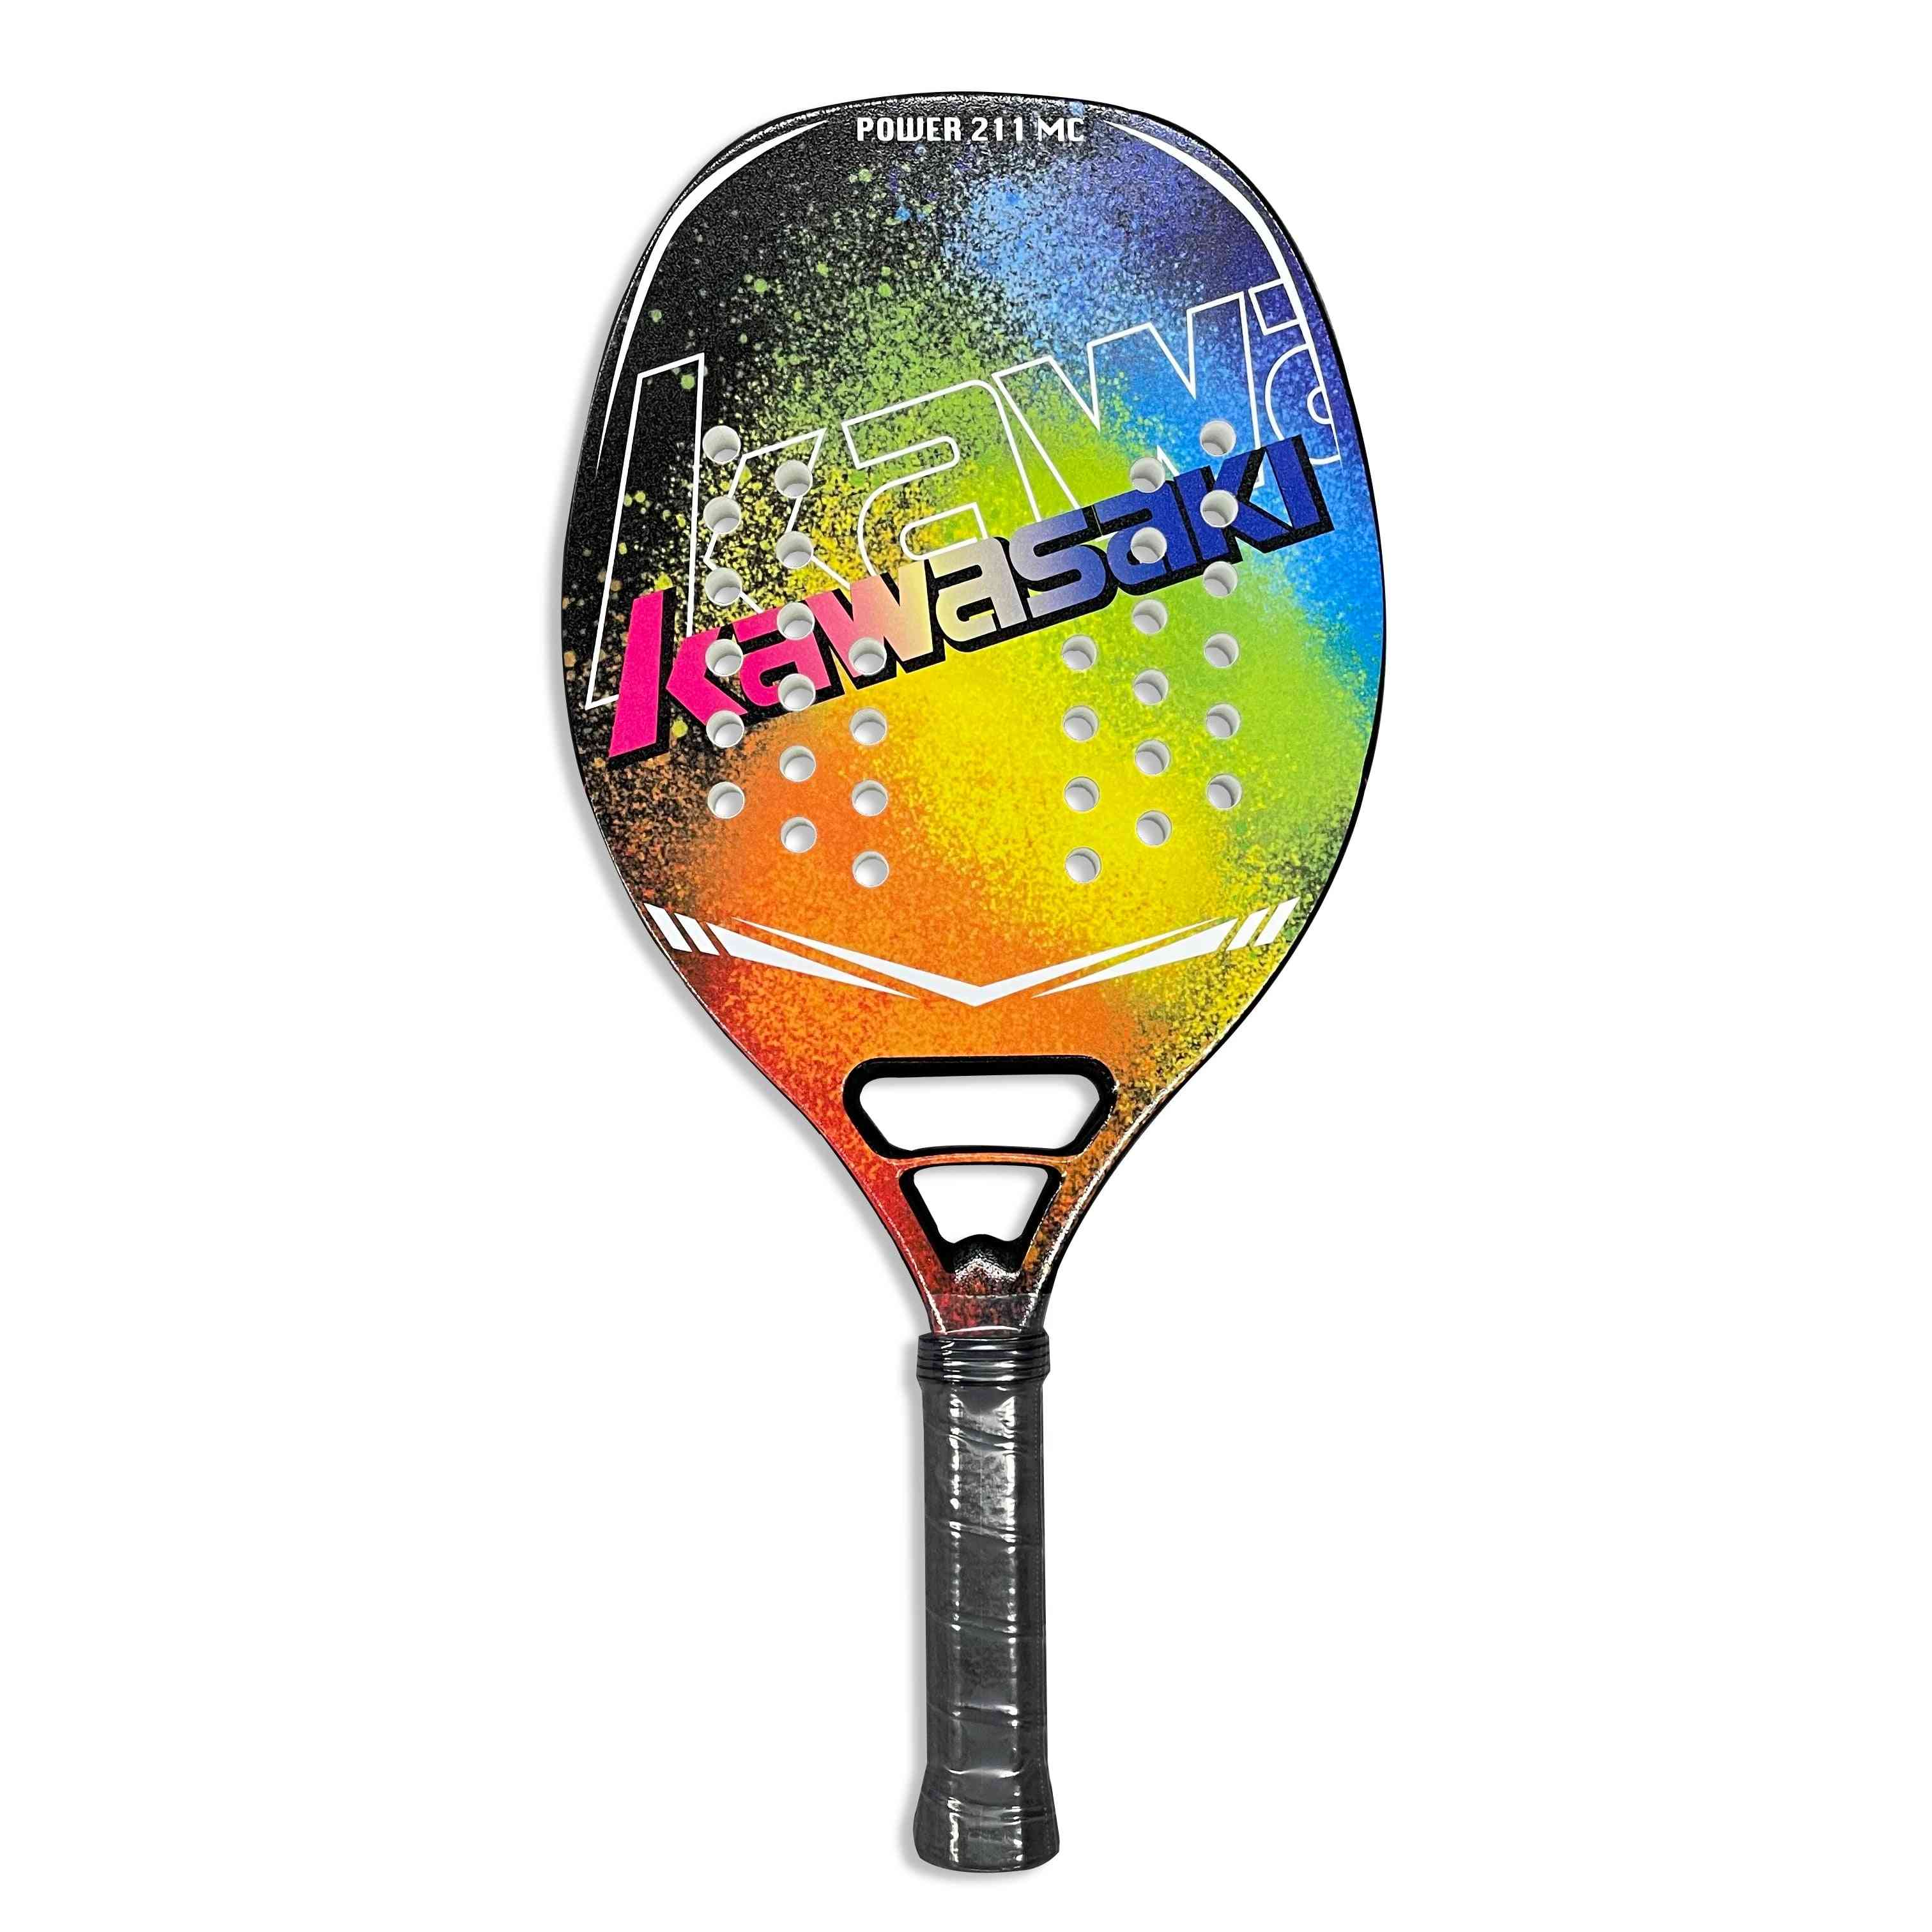 Beach Tennis Racket Carbon And Glass Fiber Soft Face Tennis Racquet